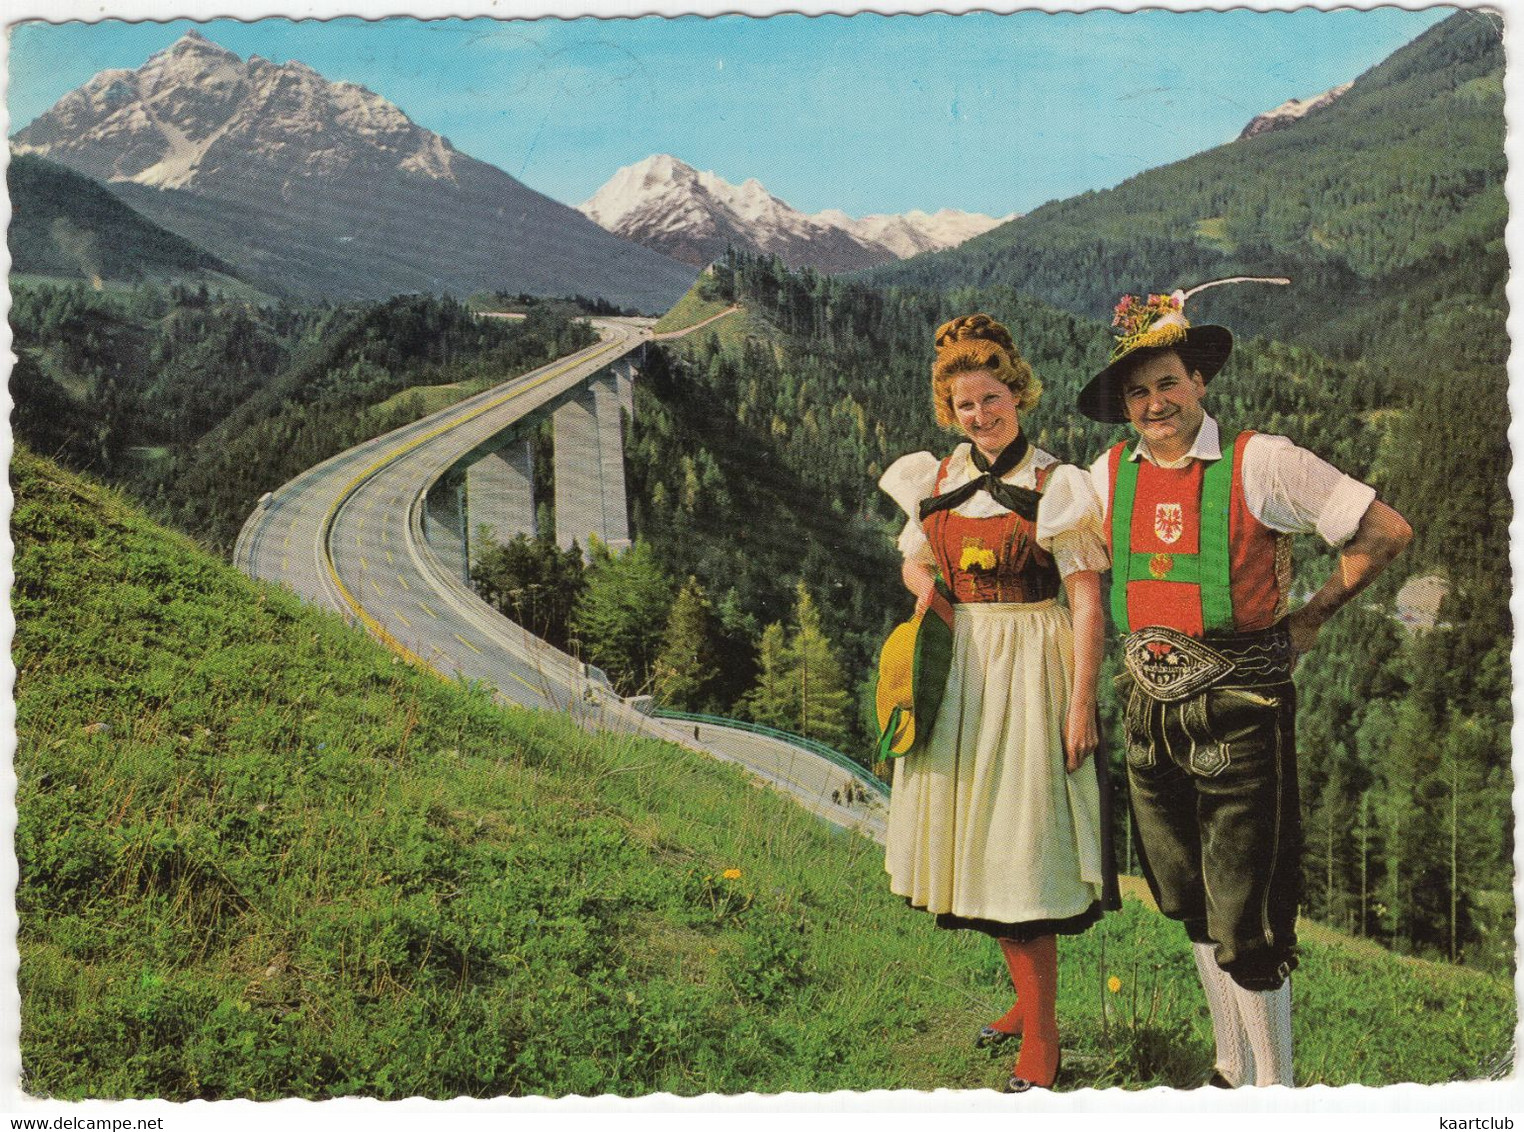 Jodlerduo Kerschbaumer-Meizner An Der Europabrücke - Brenner-Autobahn - Tirol - (Österreich / Austria) - Wörgl